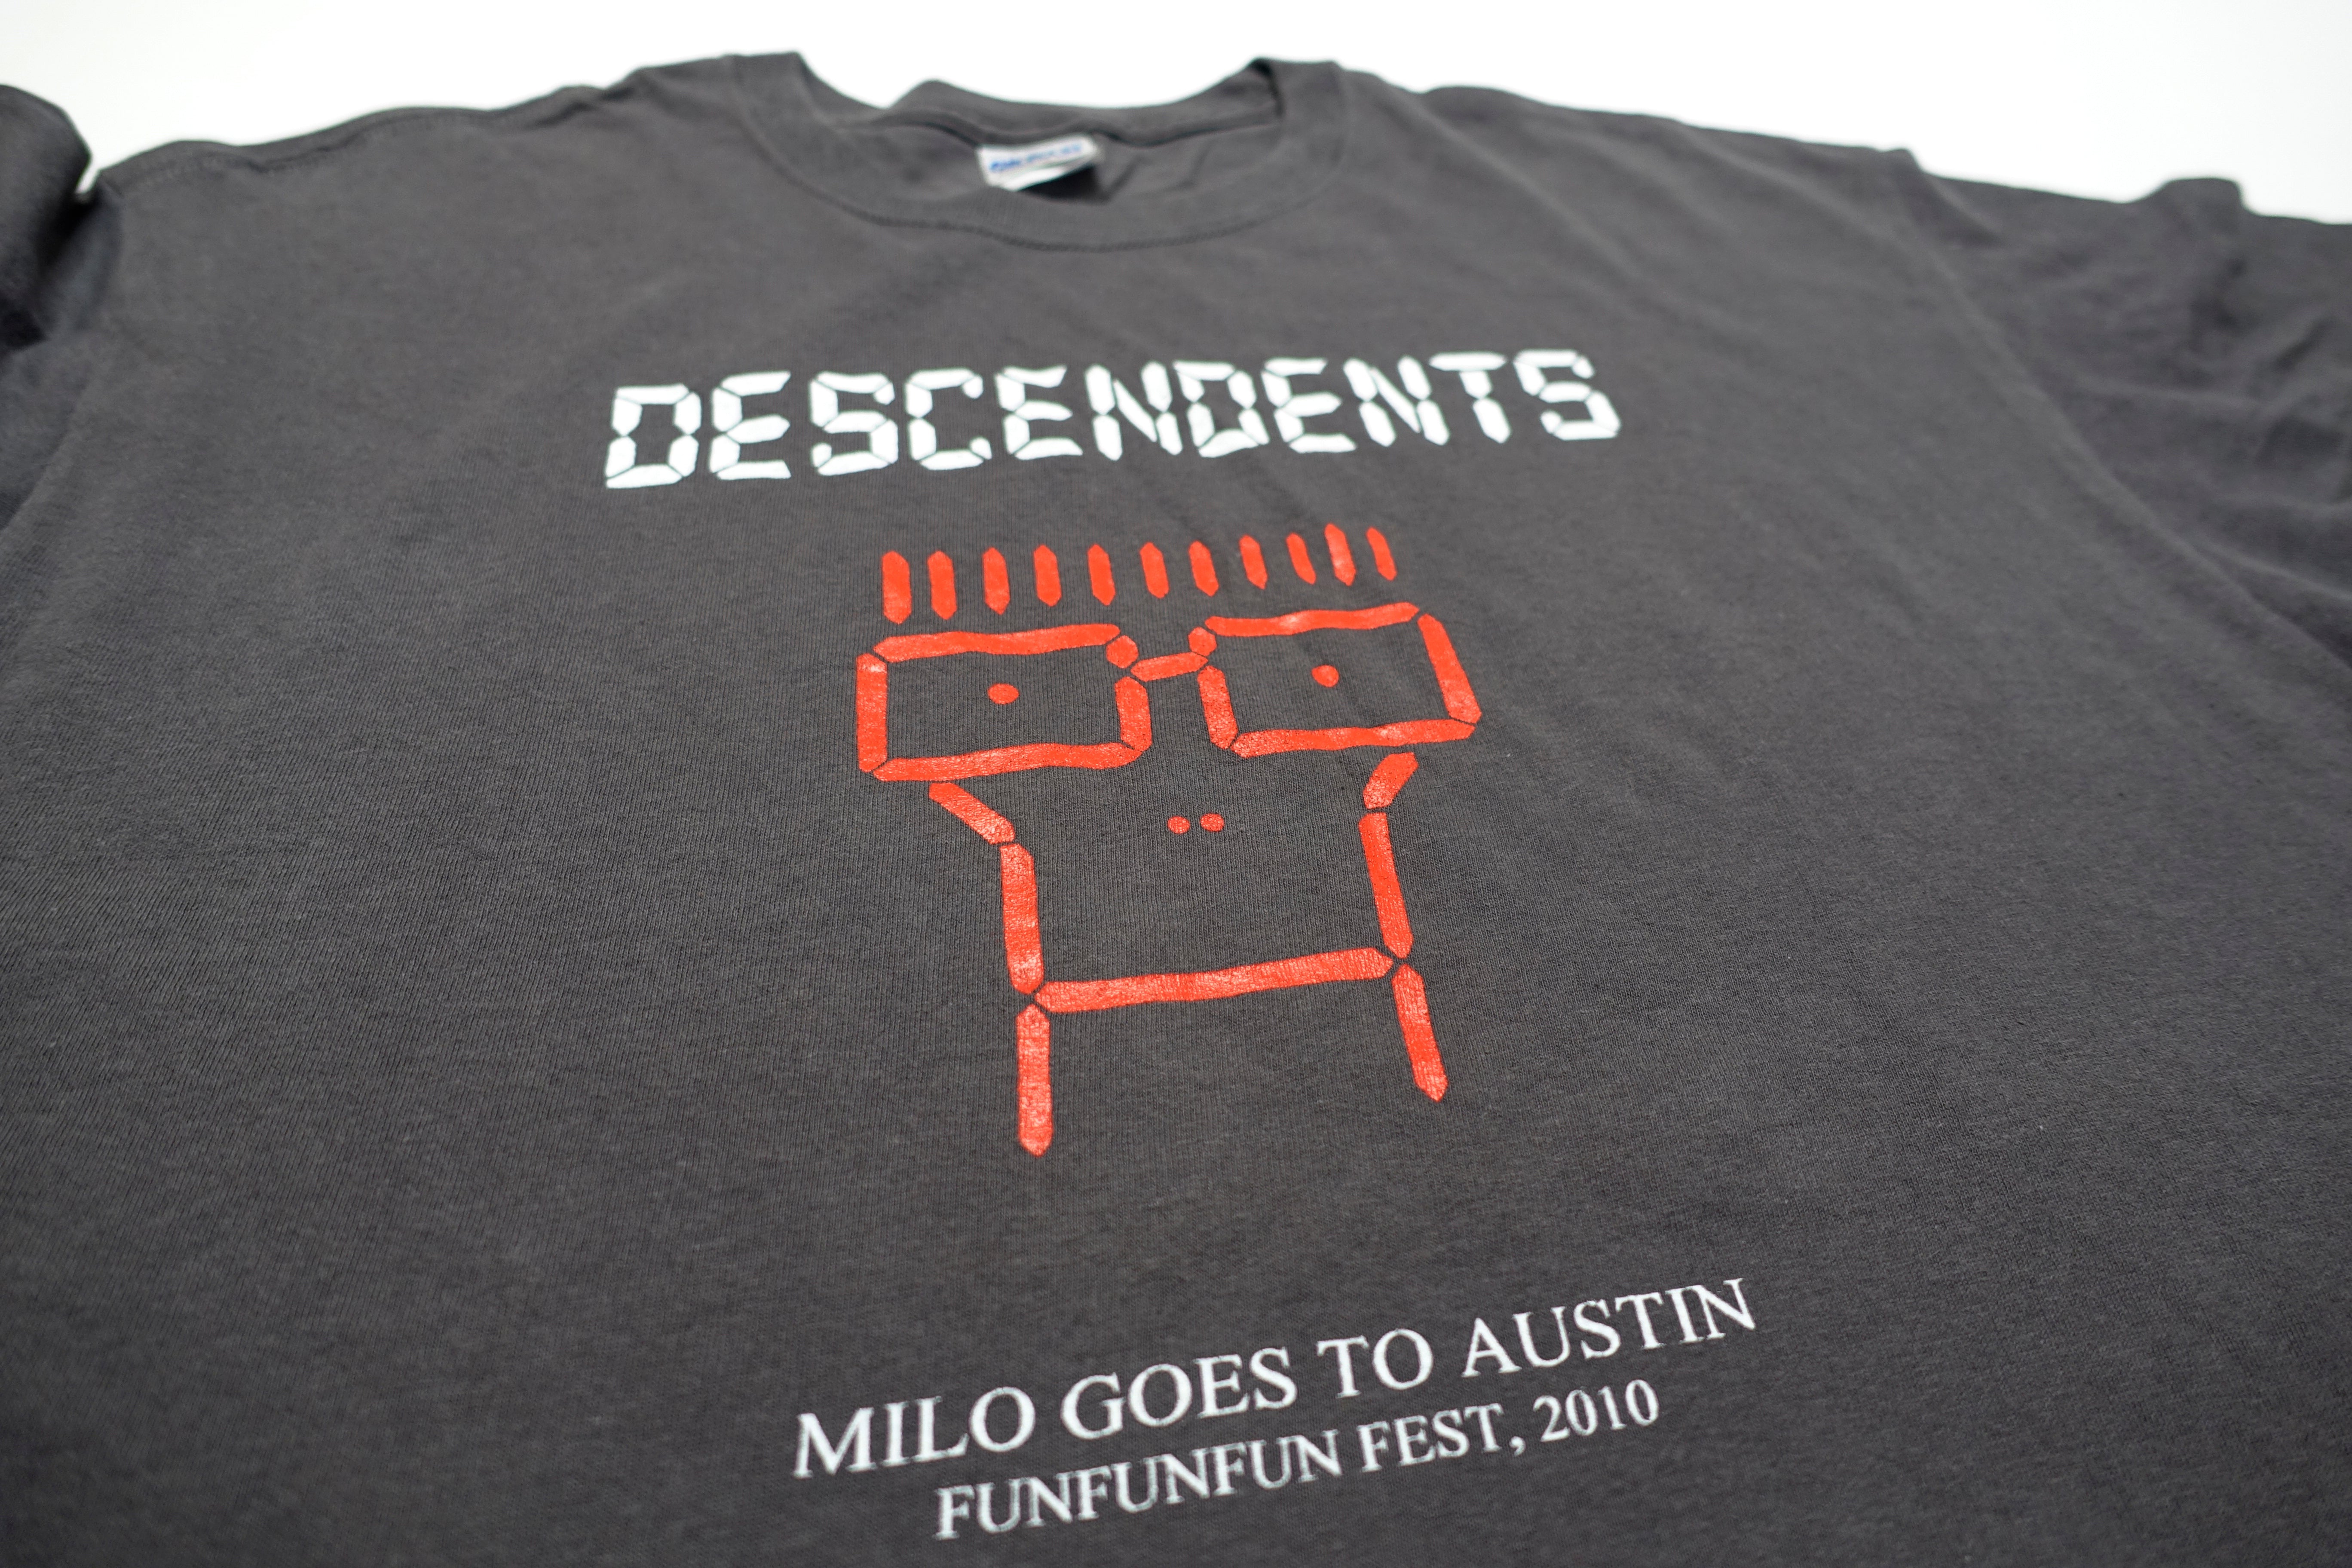 Descendents - Milo Goes To Austin / Fun Fun Fun Fest 2010 Tour Shirt Size Large